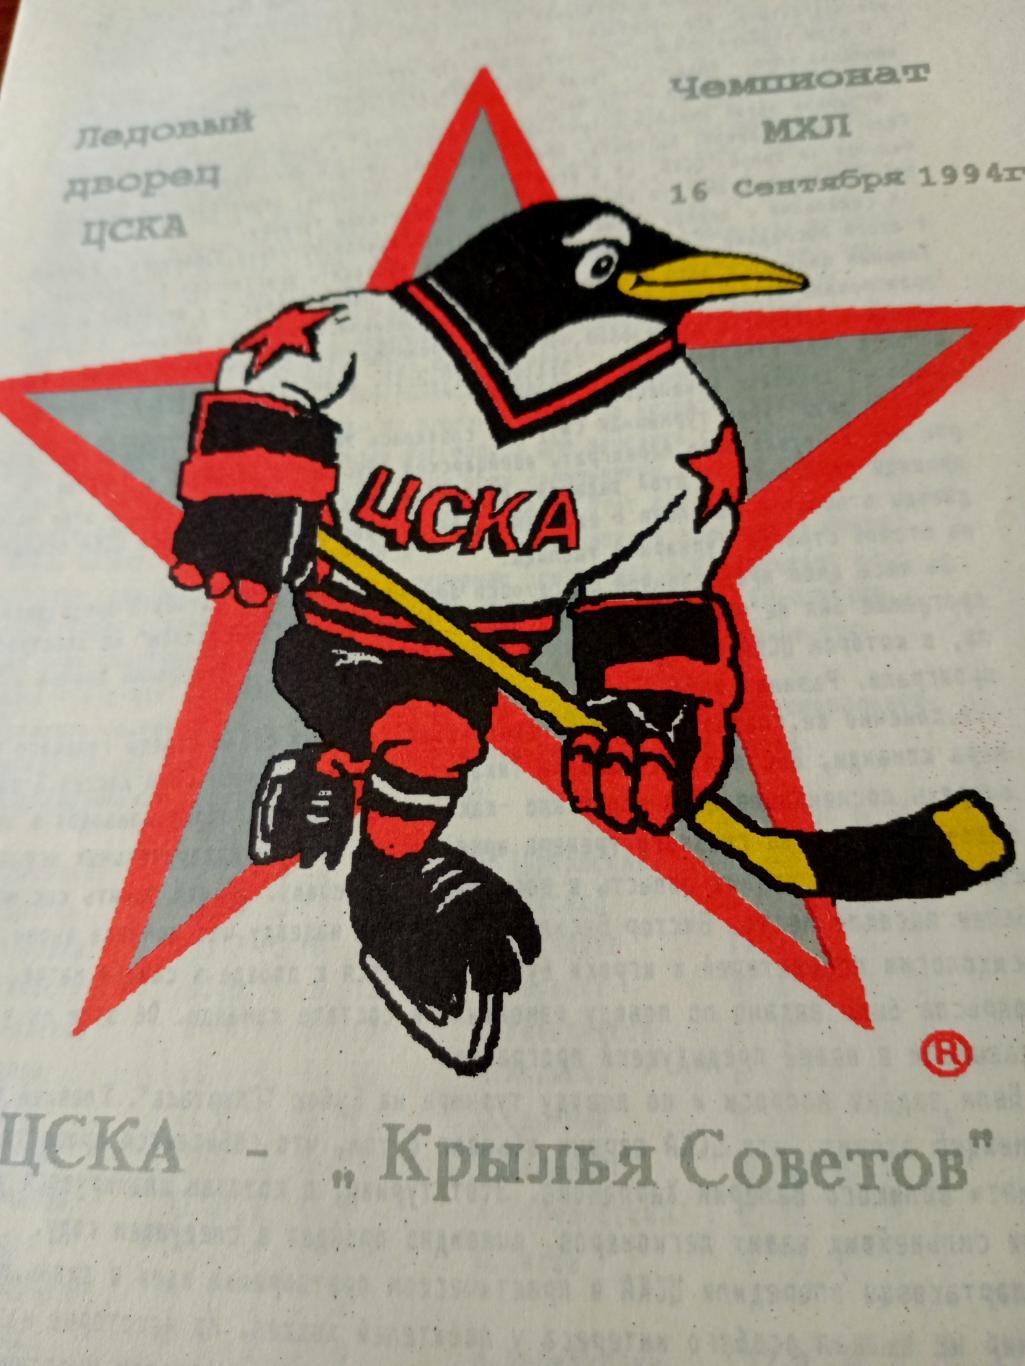 ЦСКА - Крылья Советов Москва. 16 сентября 1994 год